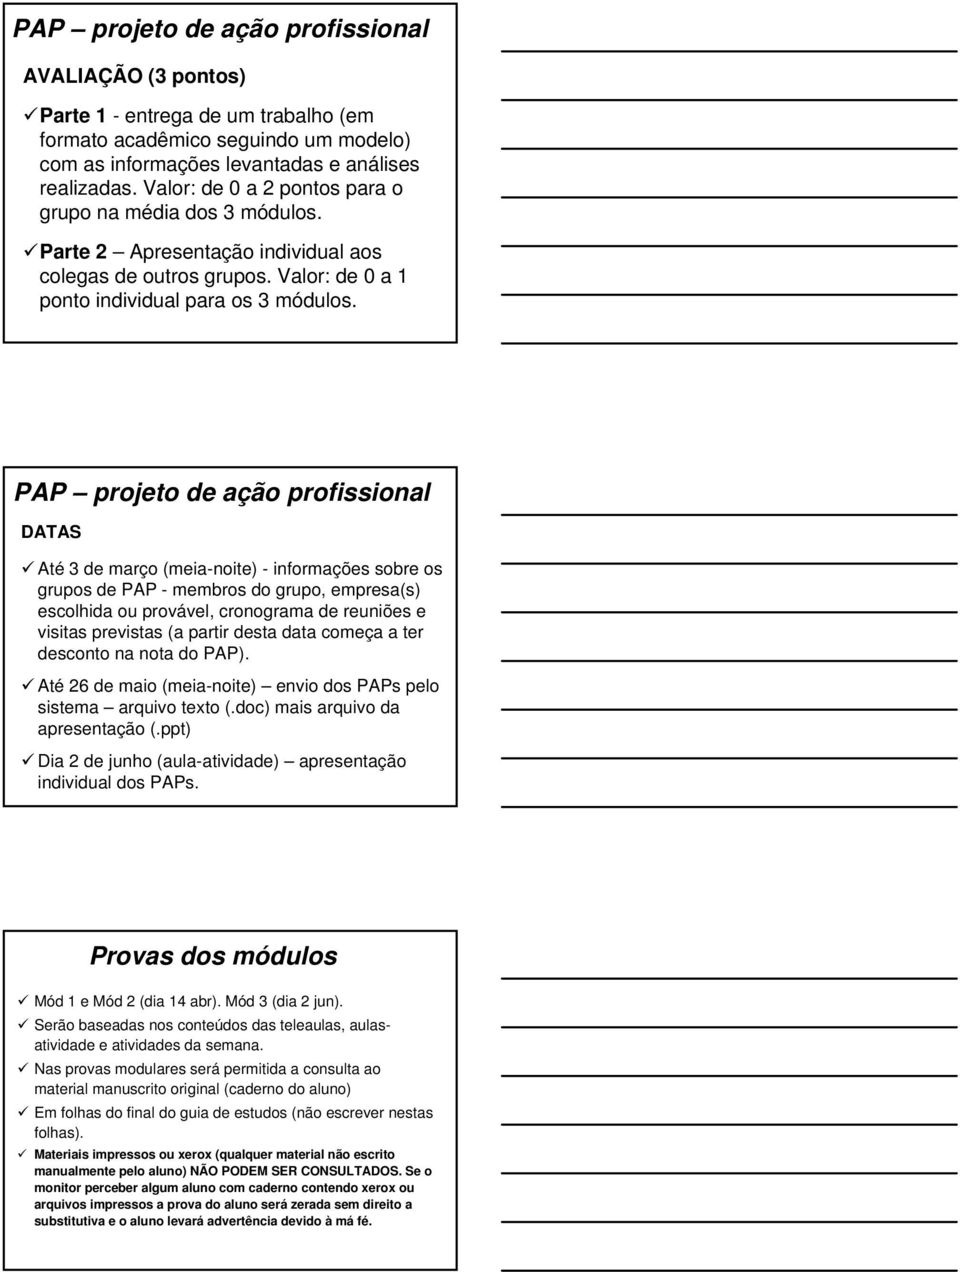 PAP projeto de ação profissional DATAS Até 3 de março (meia-noite) - informações sobre os grupos de PAP - membros do grupo, empresa(s) escolhida ou provável, cronograma de reuniões e visitas